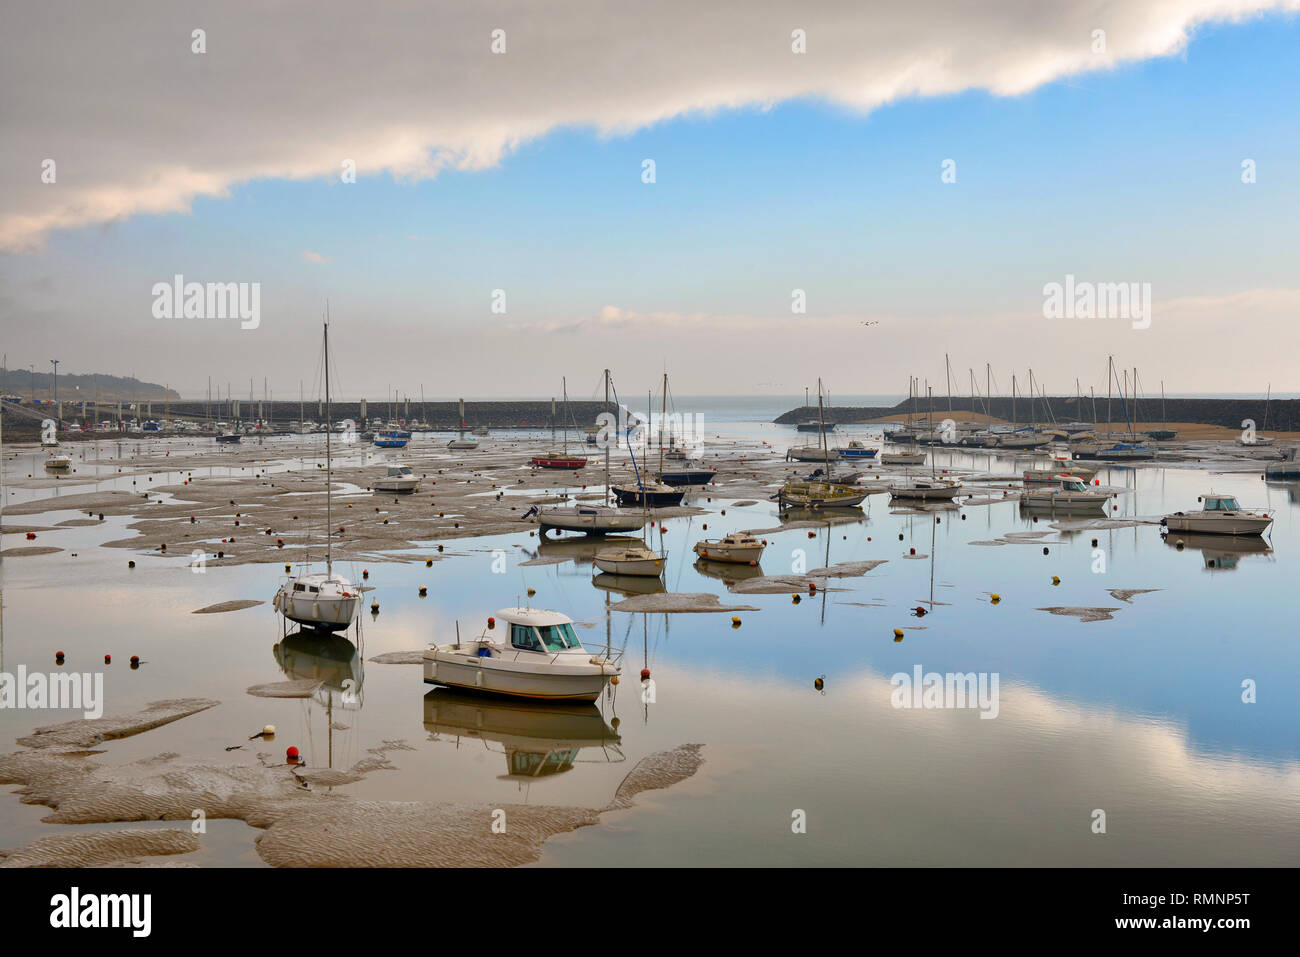 Port de plaisance à marée basse, matin, l'éclairage, Jard sur Mer, Vendée, France. Banque D'Images